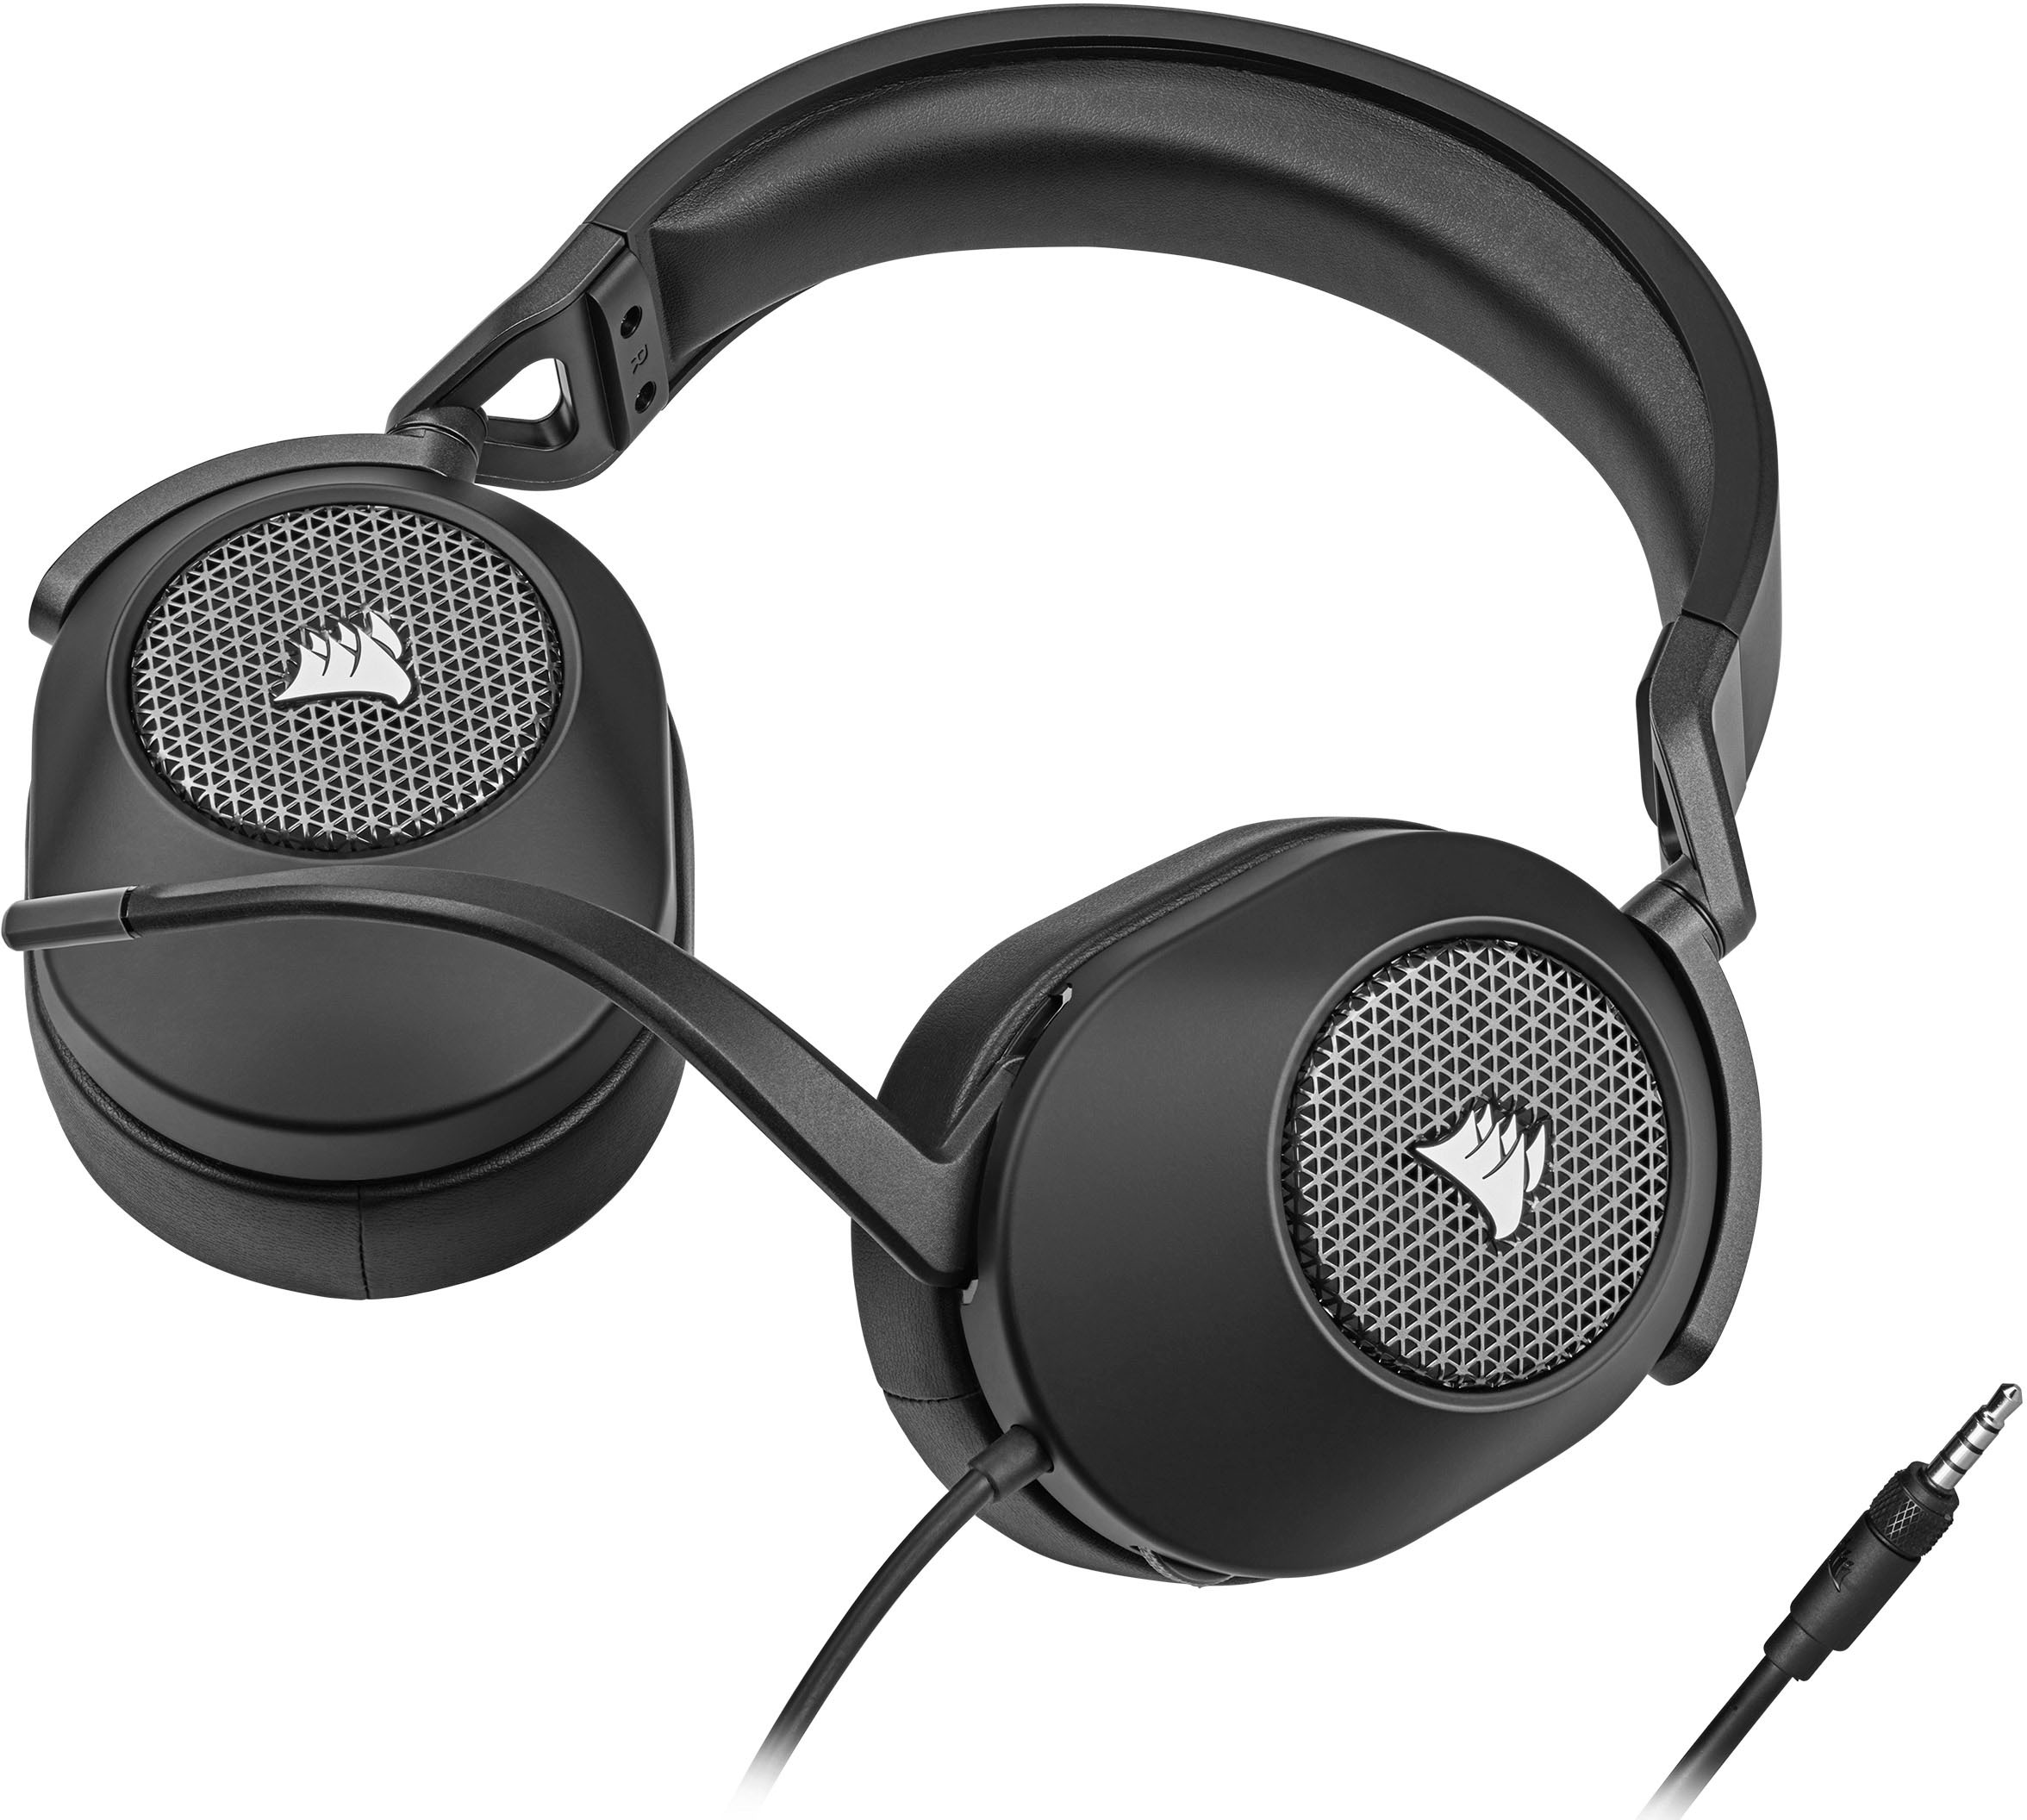 Corsair Gaming-Headset »HS65«, SURROUND ➥ 3 Jahre XXL Garantie | UNIVERSAL